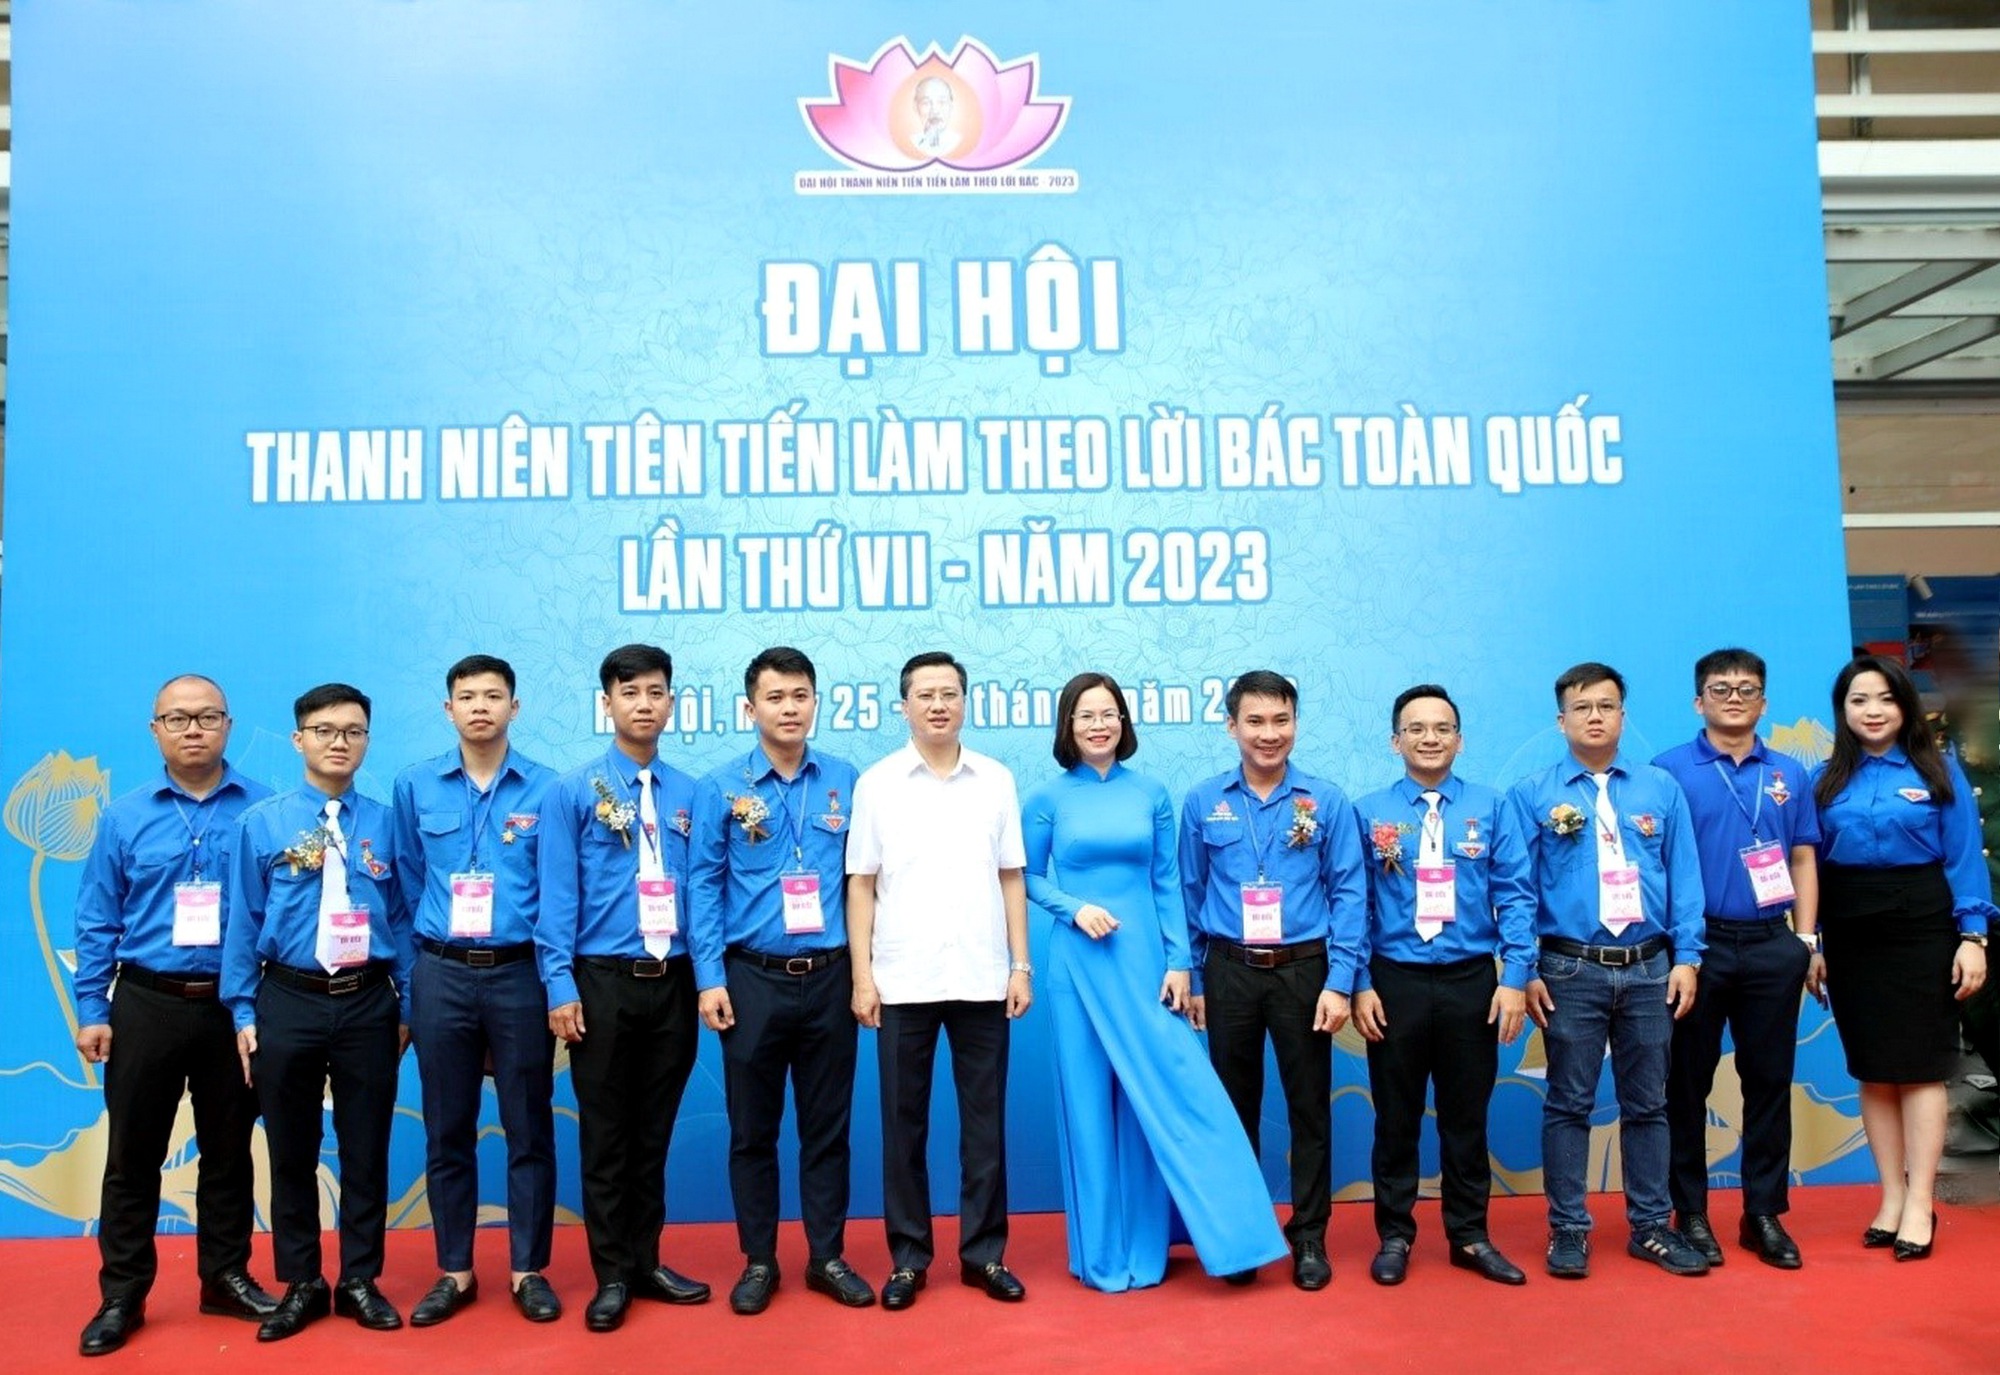 Kỹ sư Nguyễn Thành Thịnh - Thanh niên tiên tiến làm theo lời Bác toàn quốc năm 2023 - Ảnh 2.